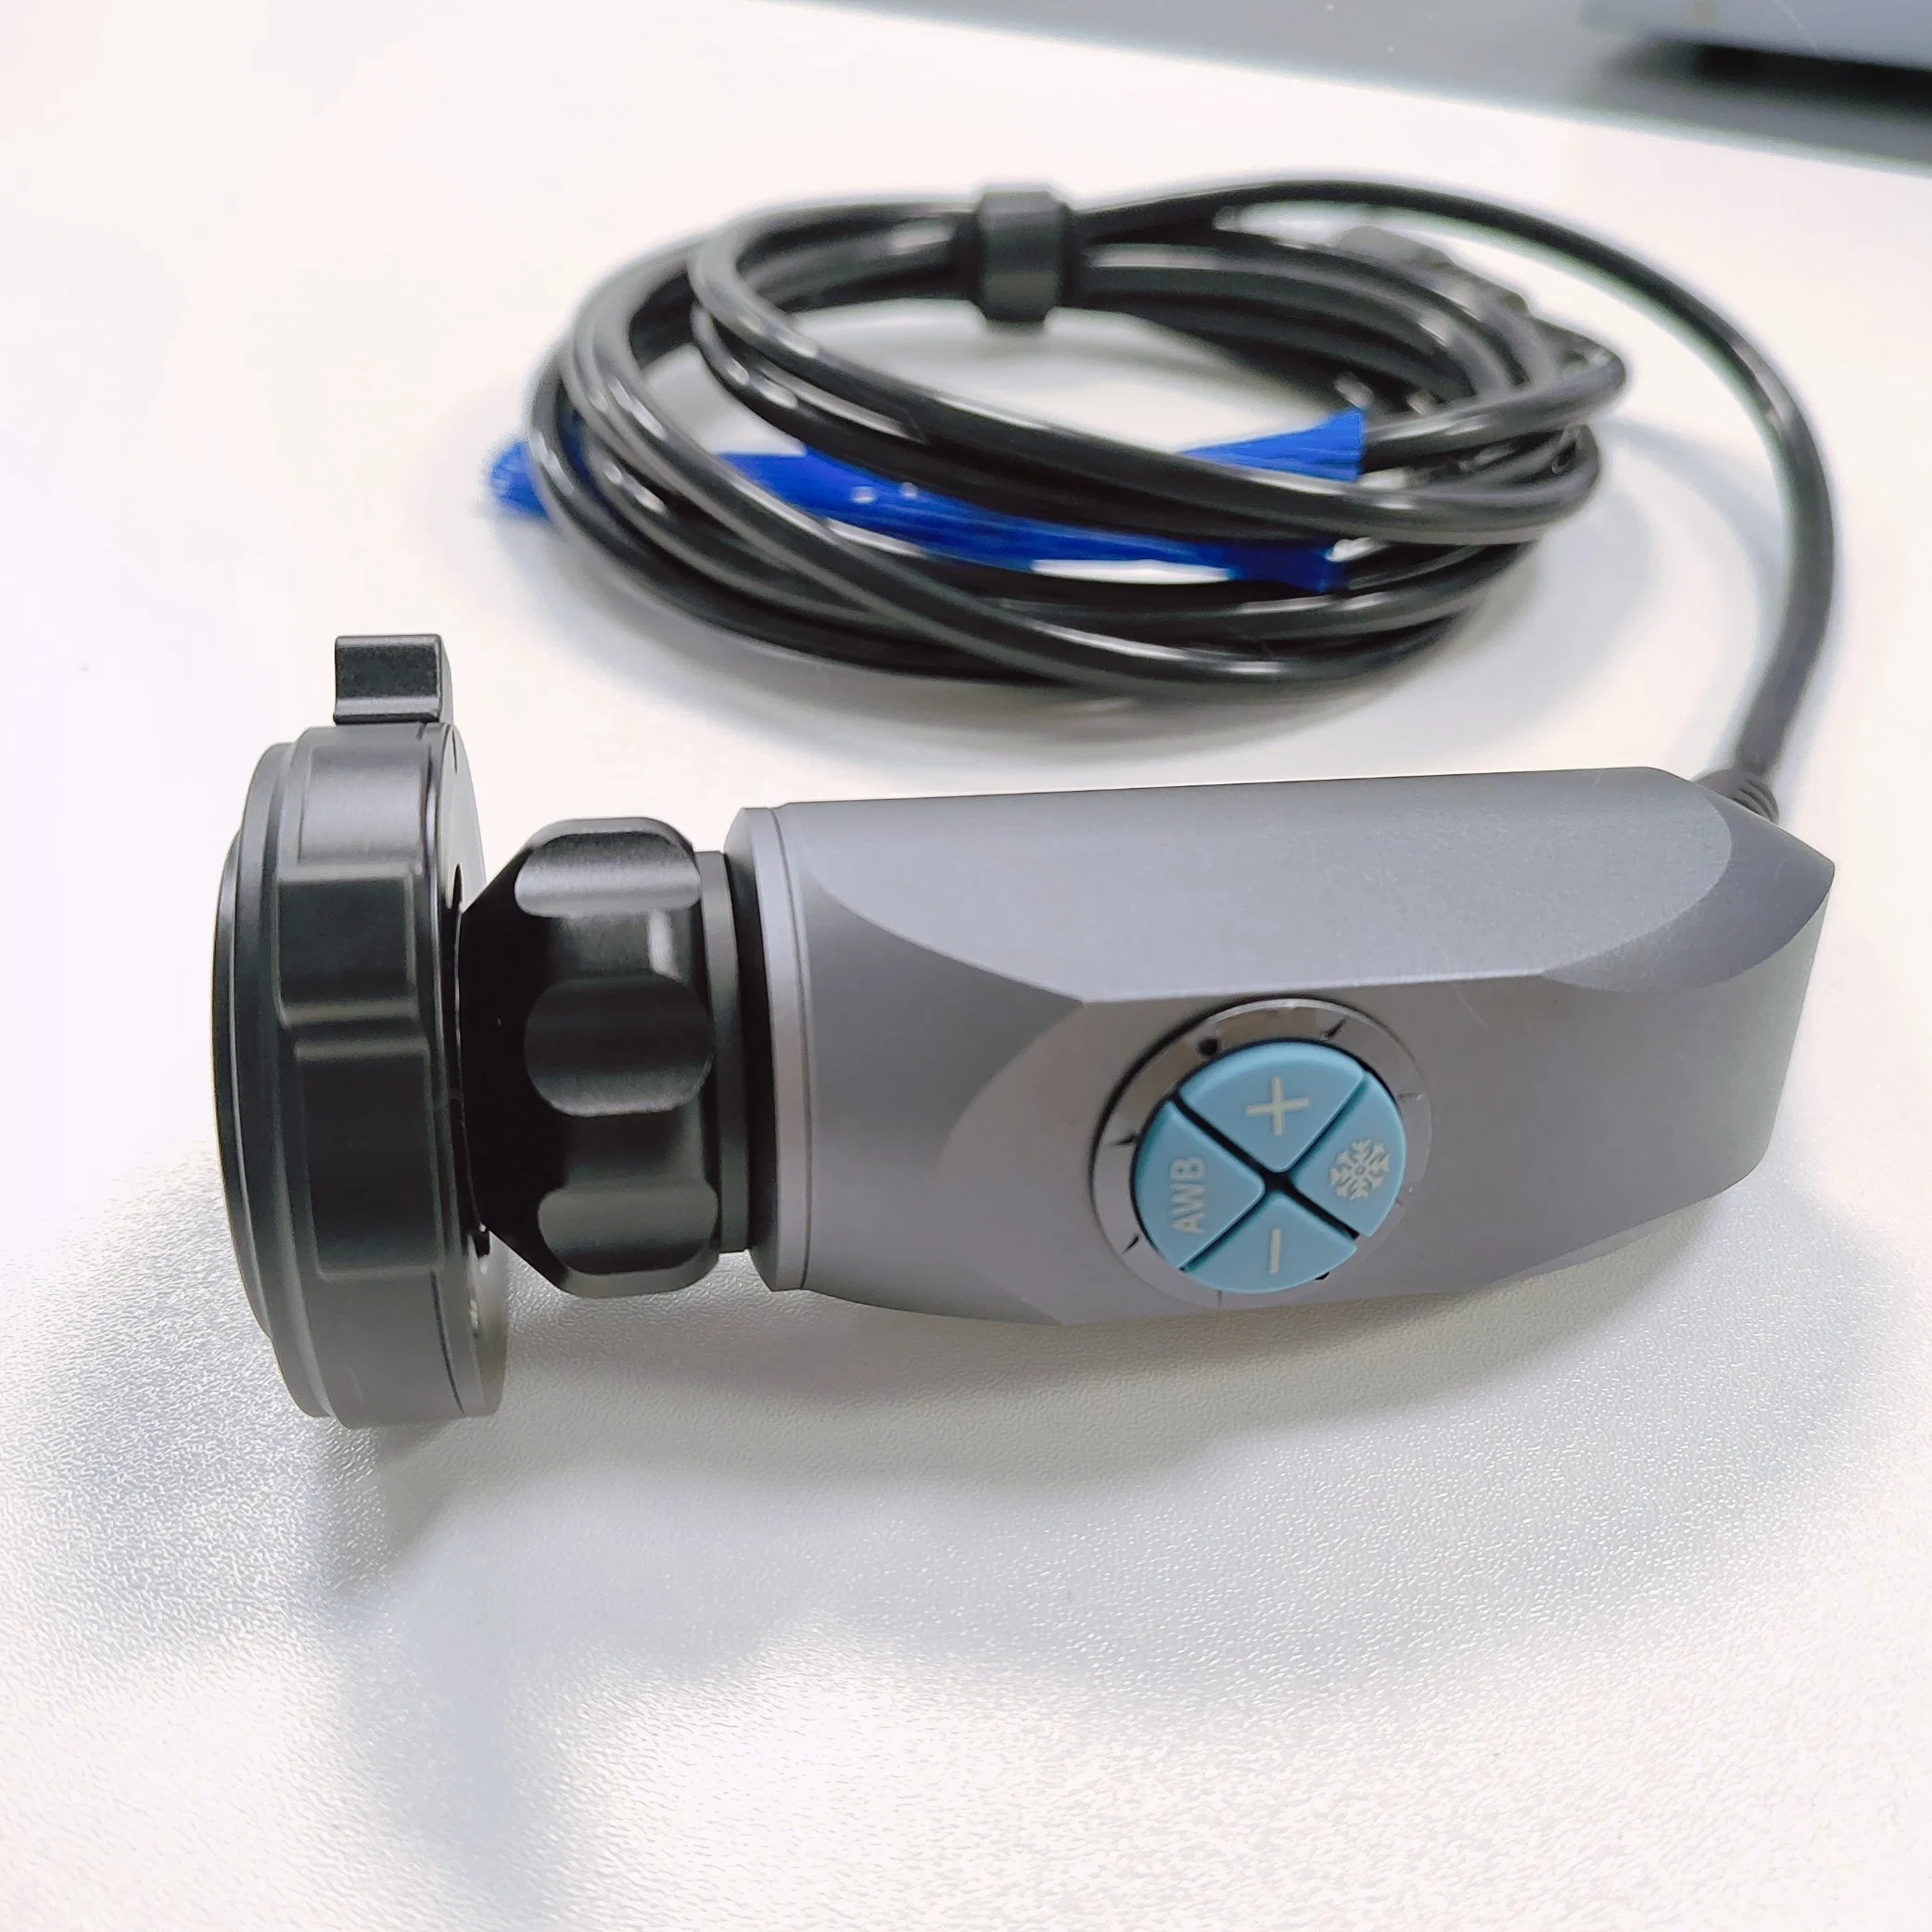 China Hersteller Full HD Video Medical Endoscope Kamera System mit Lichtquelle für Laparoskopie-Chirurgie